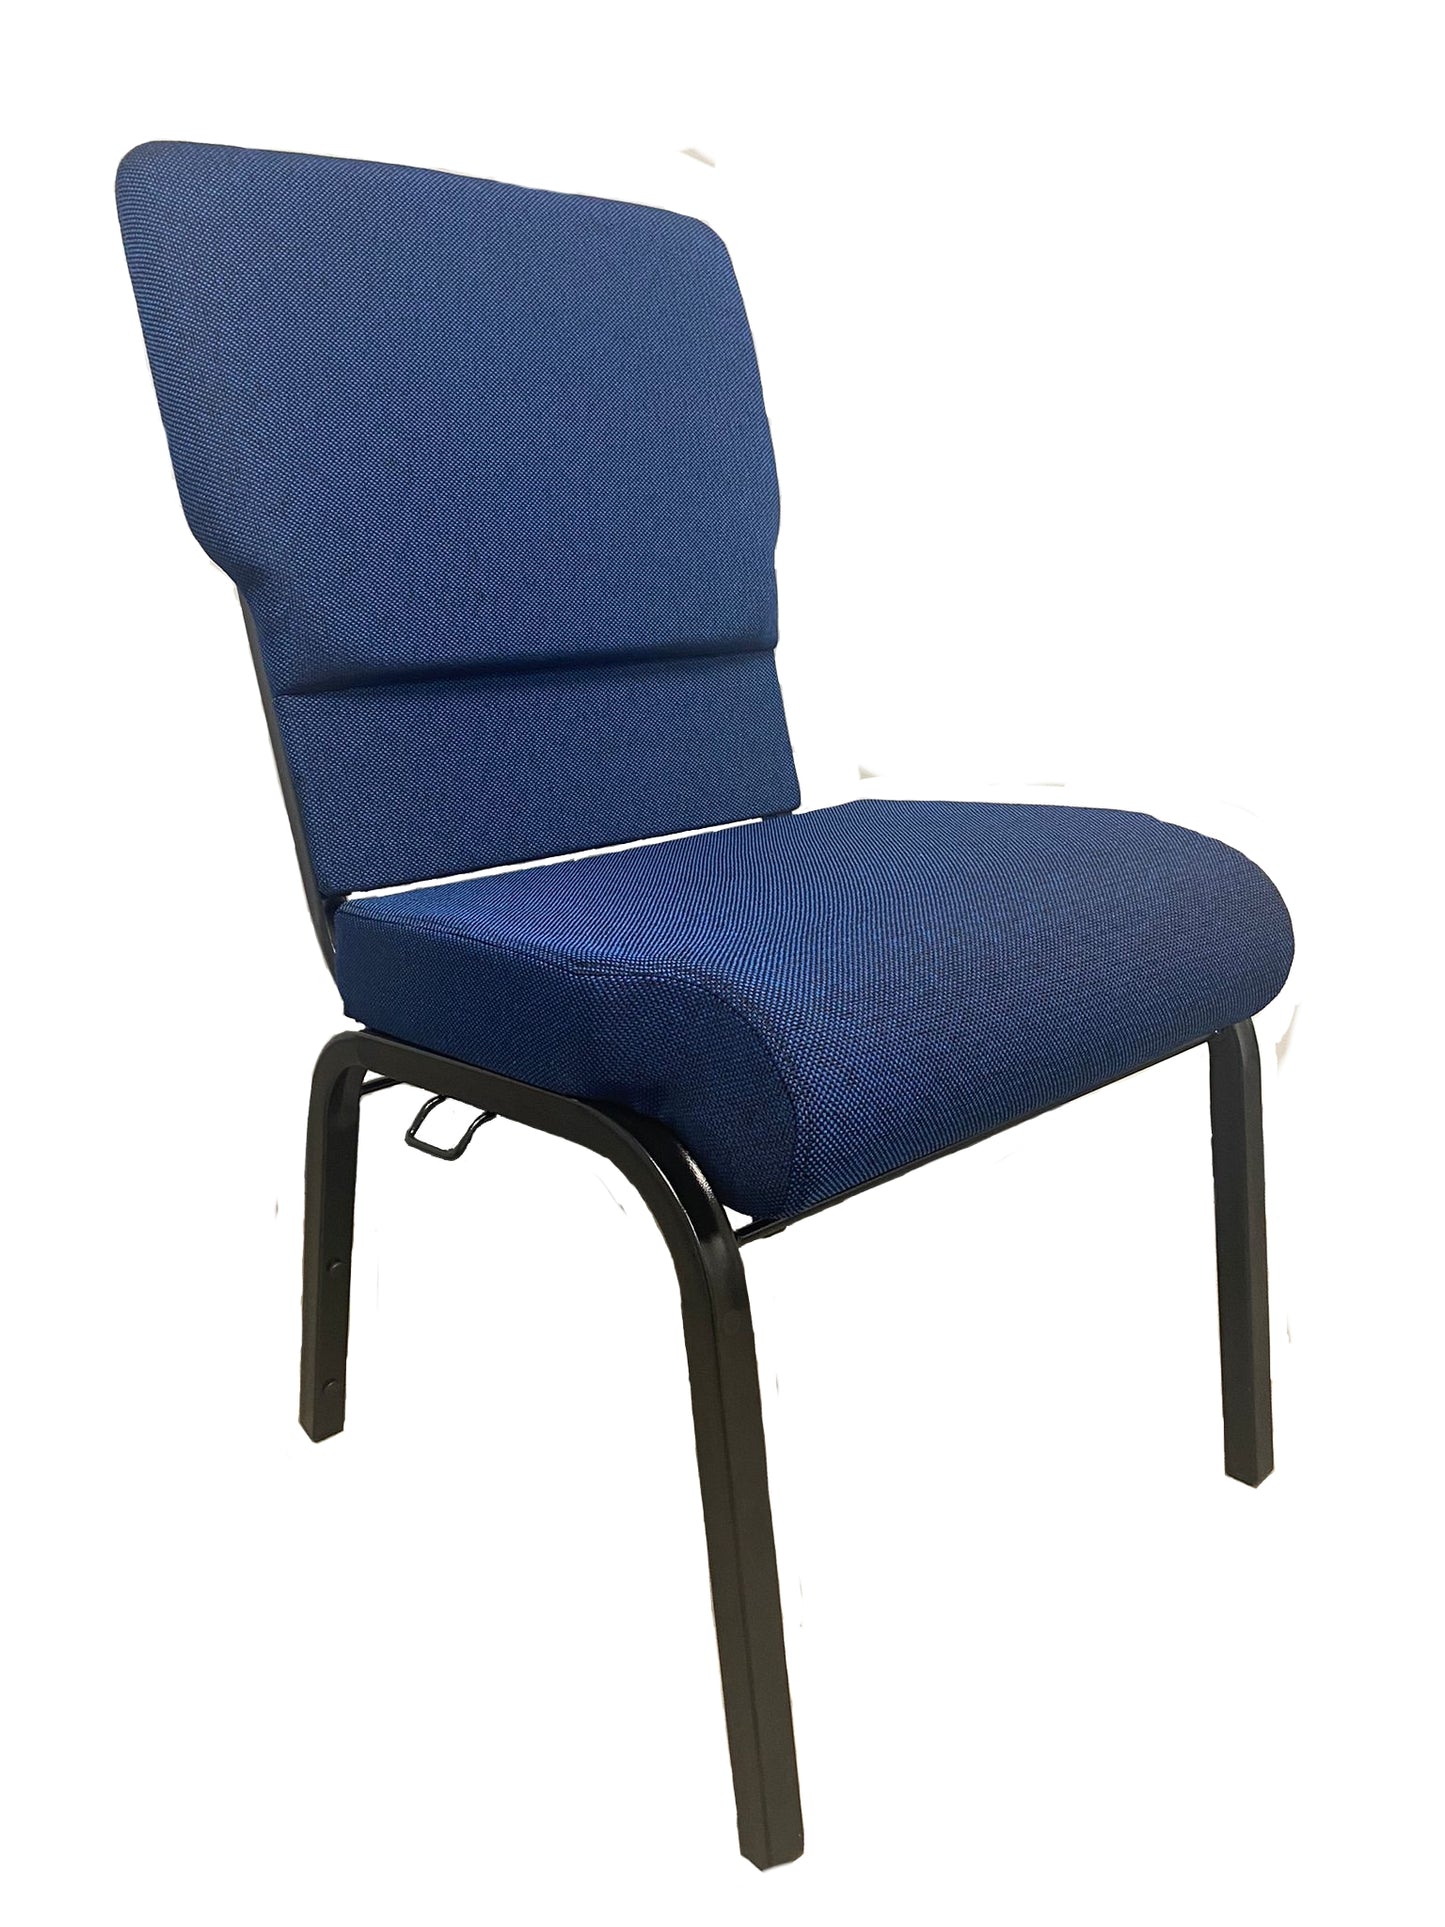 Bliss Church Chair 19.5"